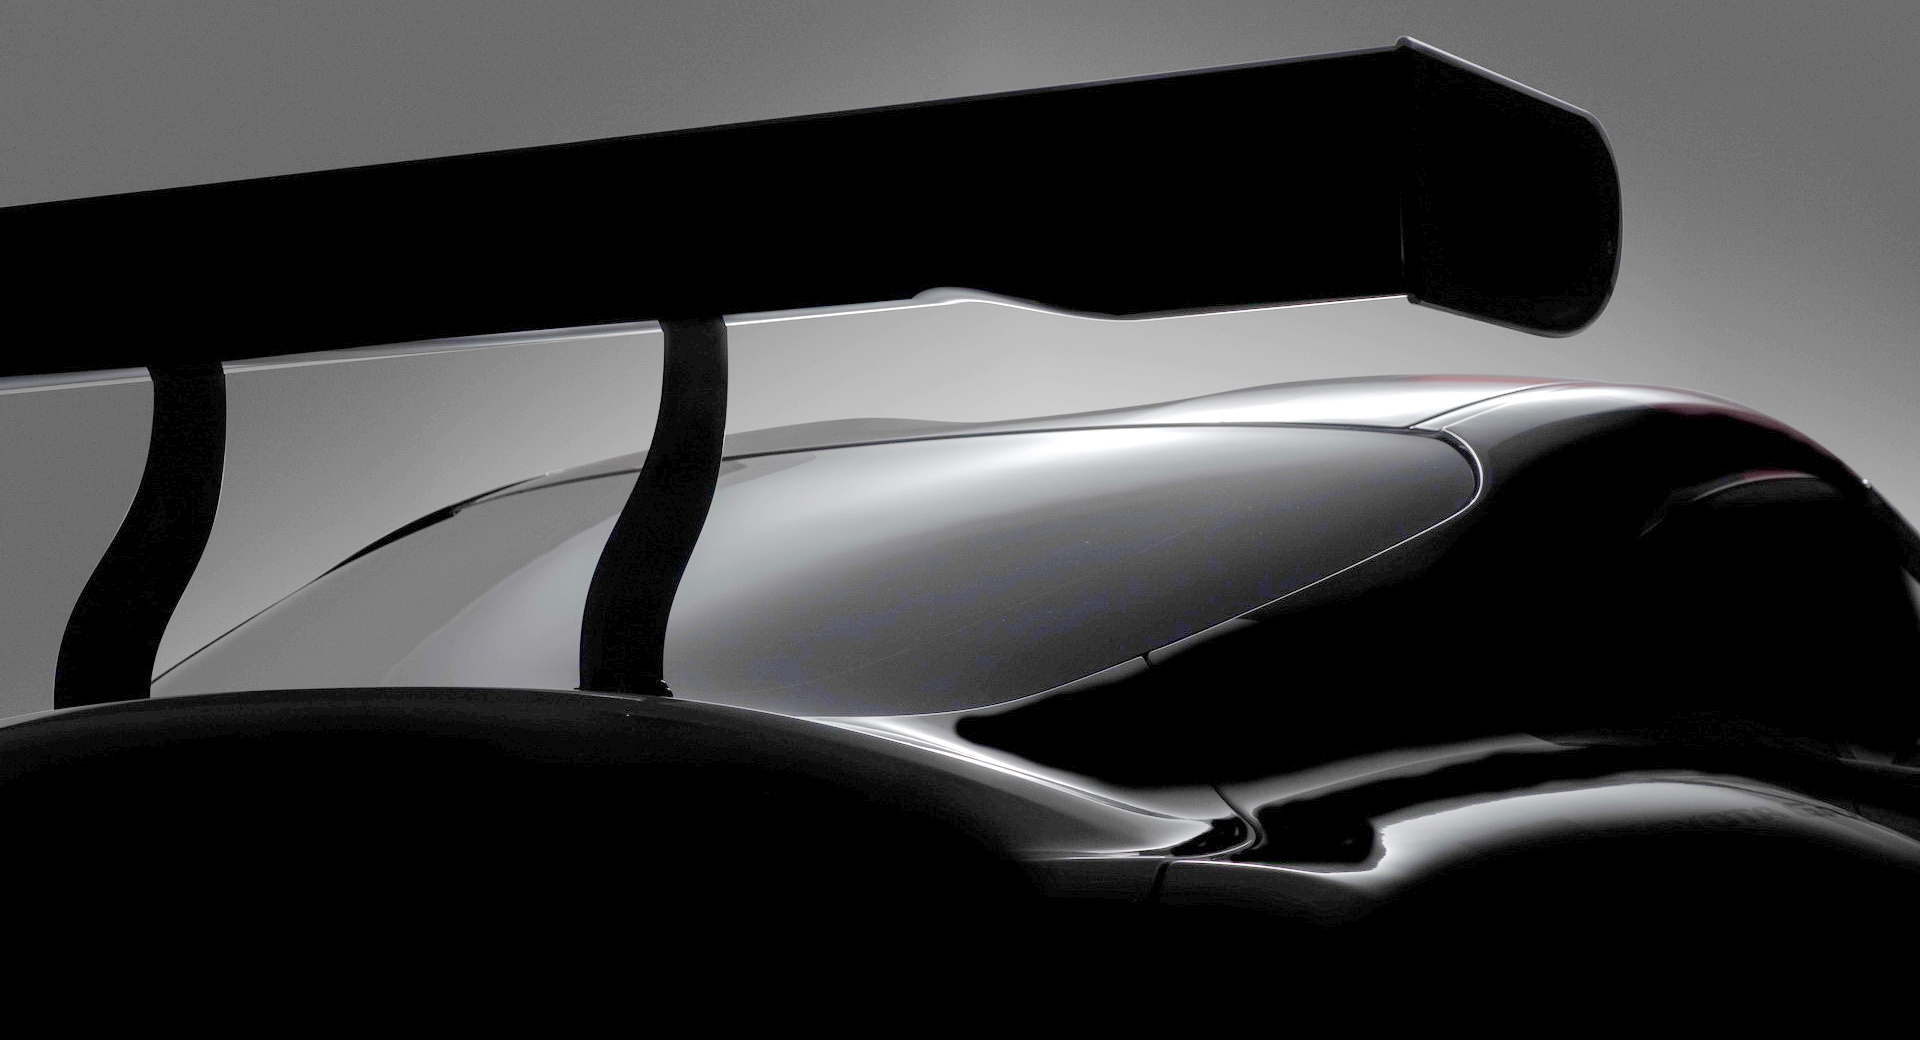 “رسمياً”: تويوتا سوبرا الجديدة سيتم تدشينها في معرض جنيف للسيارات 2018